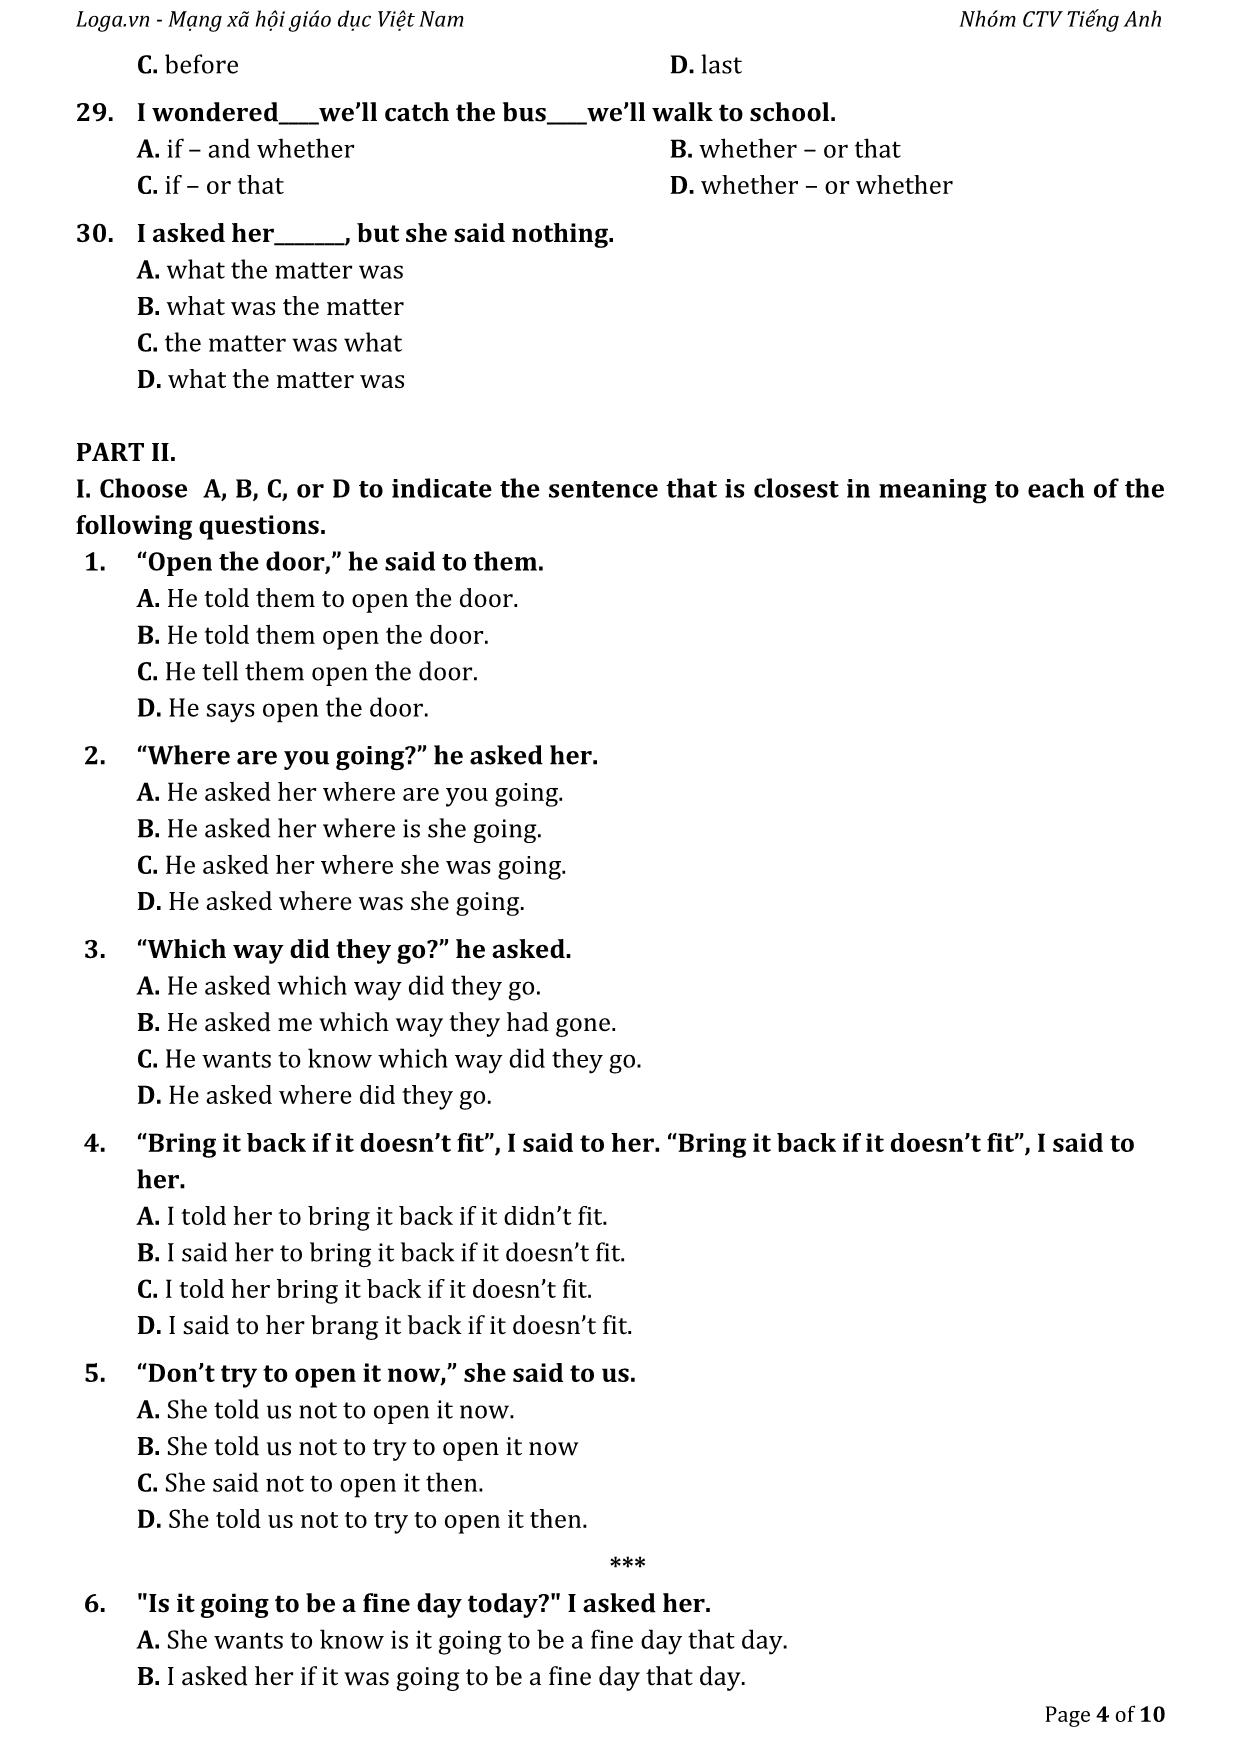 Bài tập tự luyện câu gián tiếp trong tiếng Anh trang 4